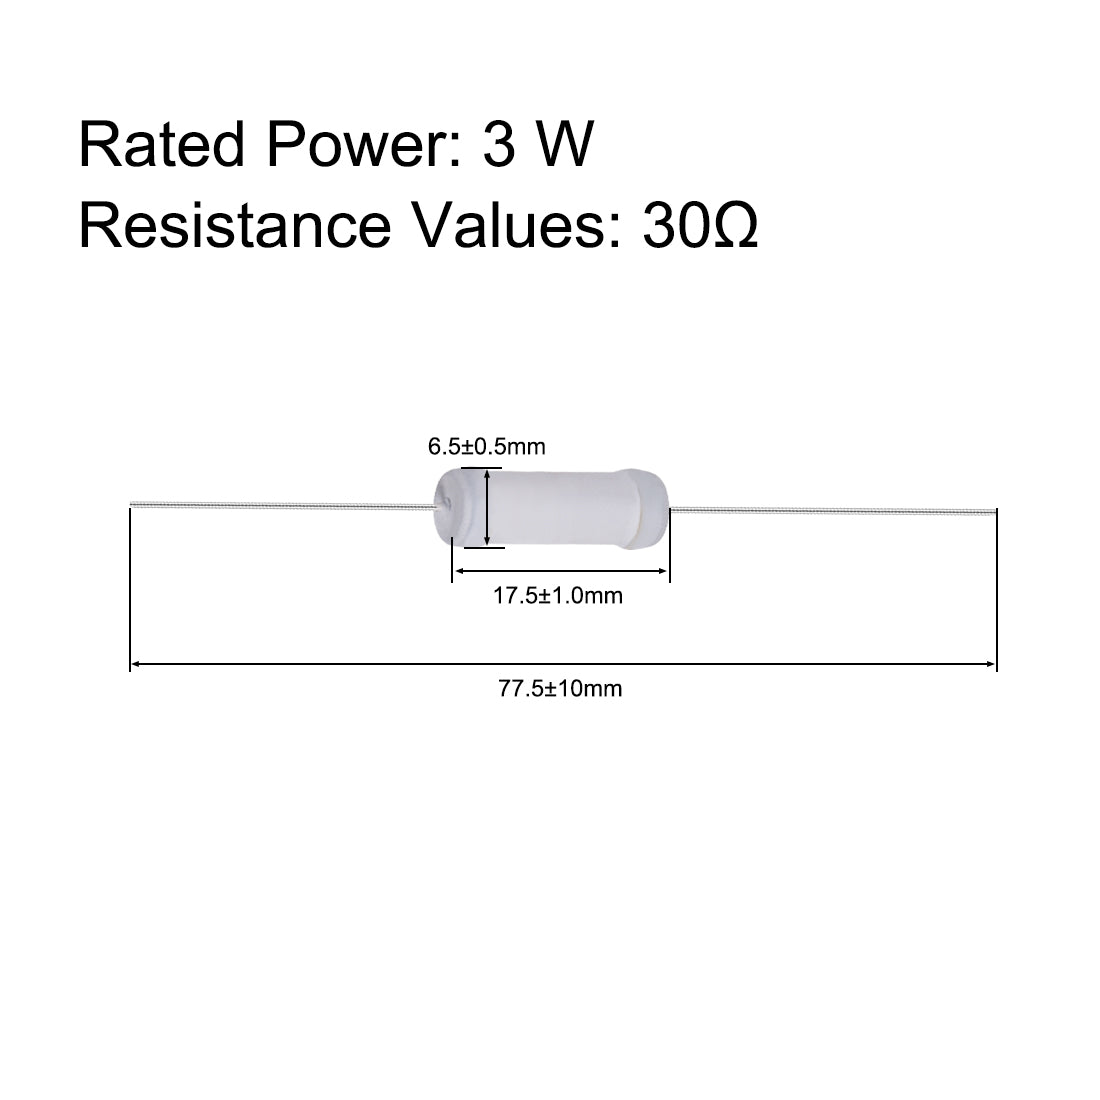 uxcell Uxcell 40pcs 3W 3 Watt Metal Oxide Film Resistor Lead 30 Ohm ±5% Tolerance